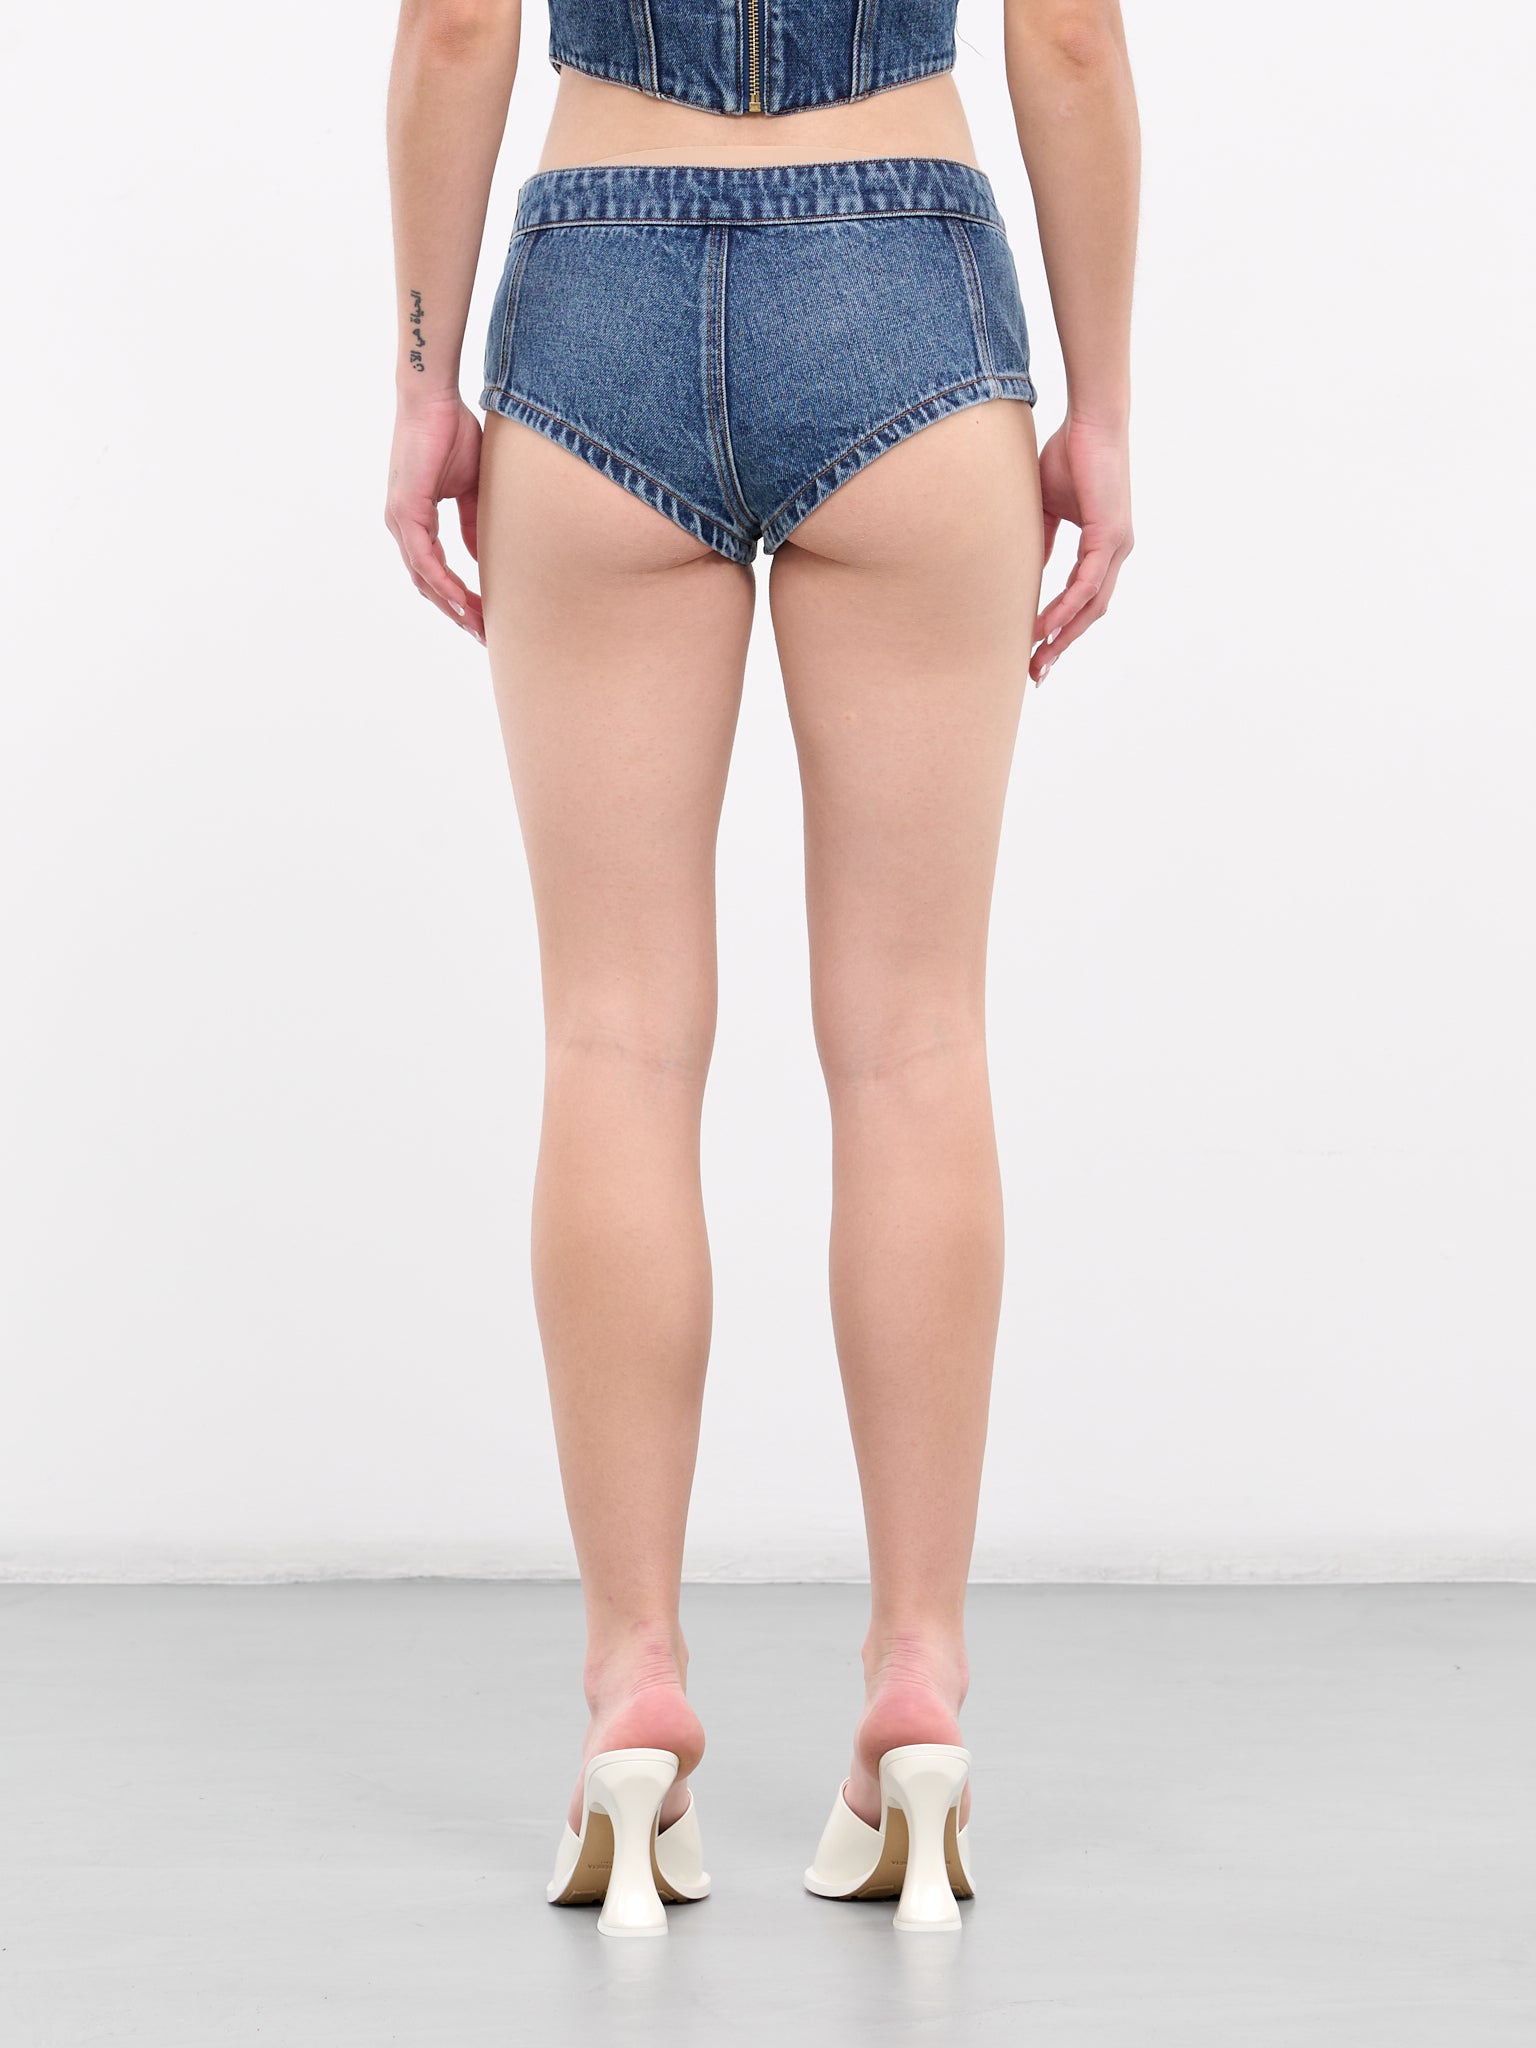 Jumbo Crystal Denim Hot Shorts (AWSO0008DE01-BLUE-MEDIUM-WASH)